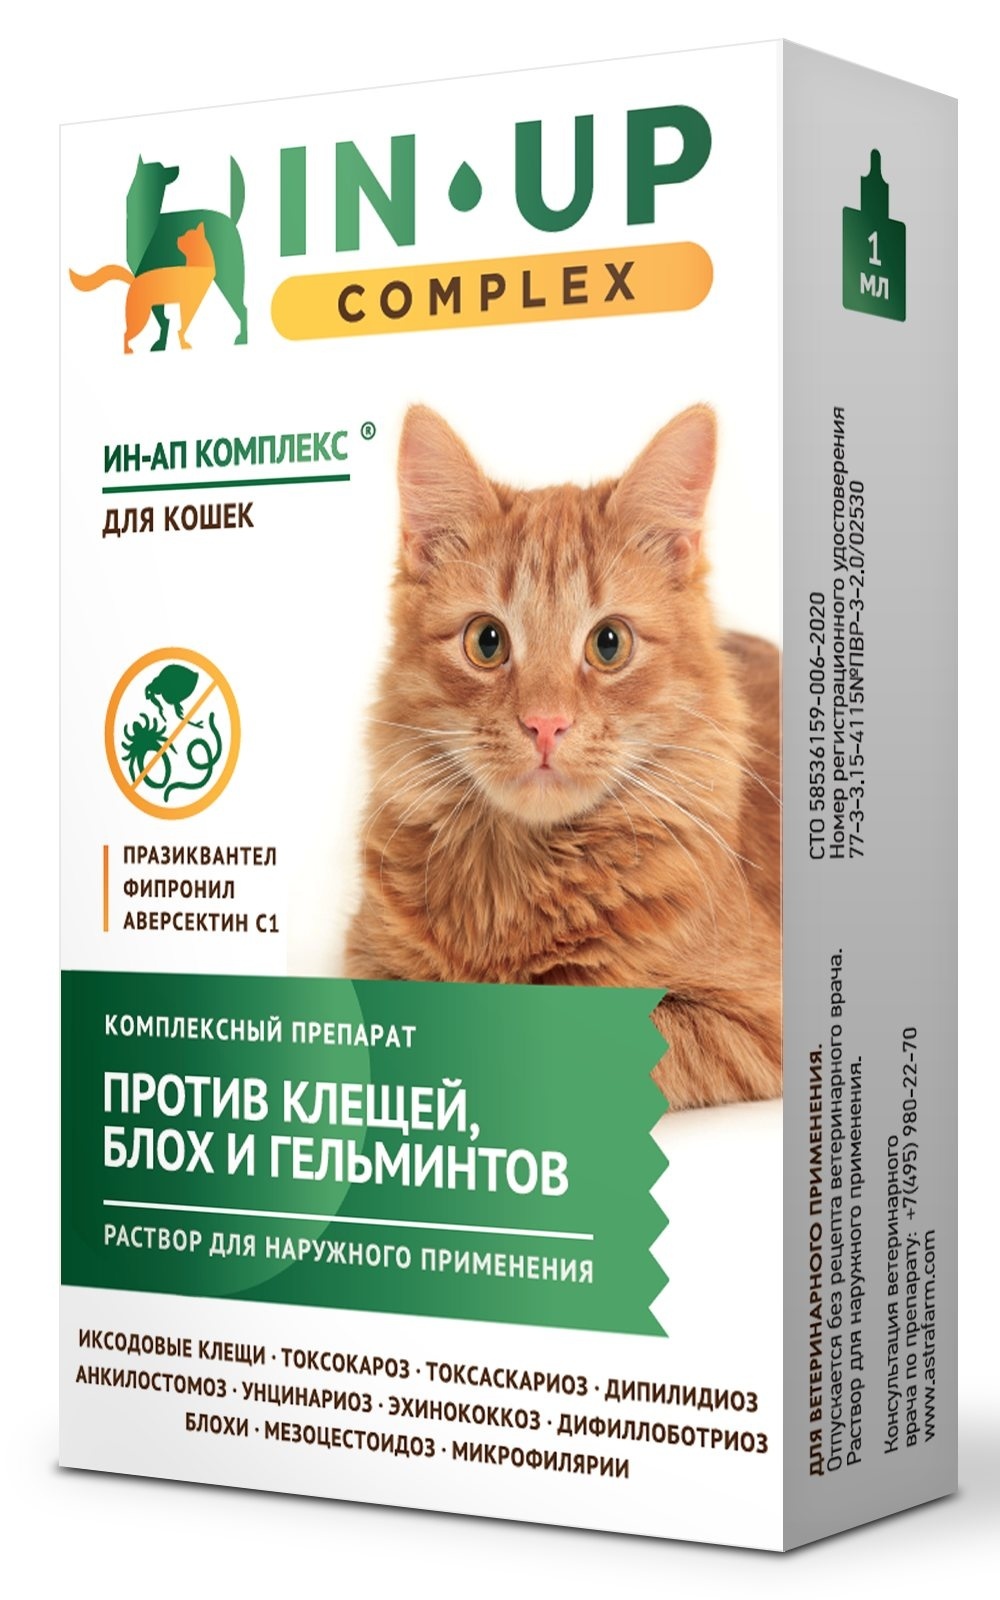 Астрафарм Астрафарм иН-АП комплекс для кошек против блох, клещей, вшей, власоедов и гельминтов (21 г)